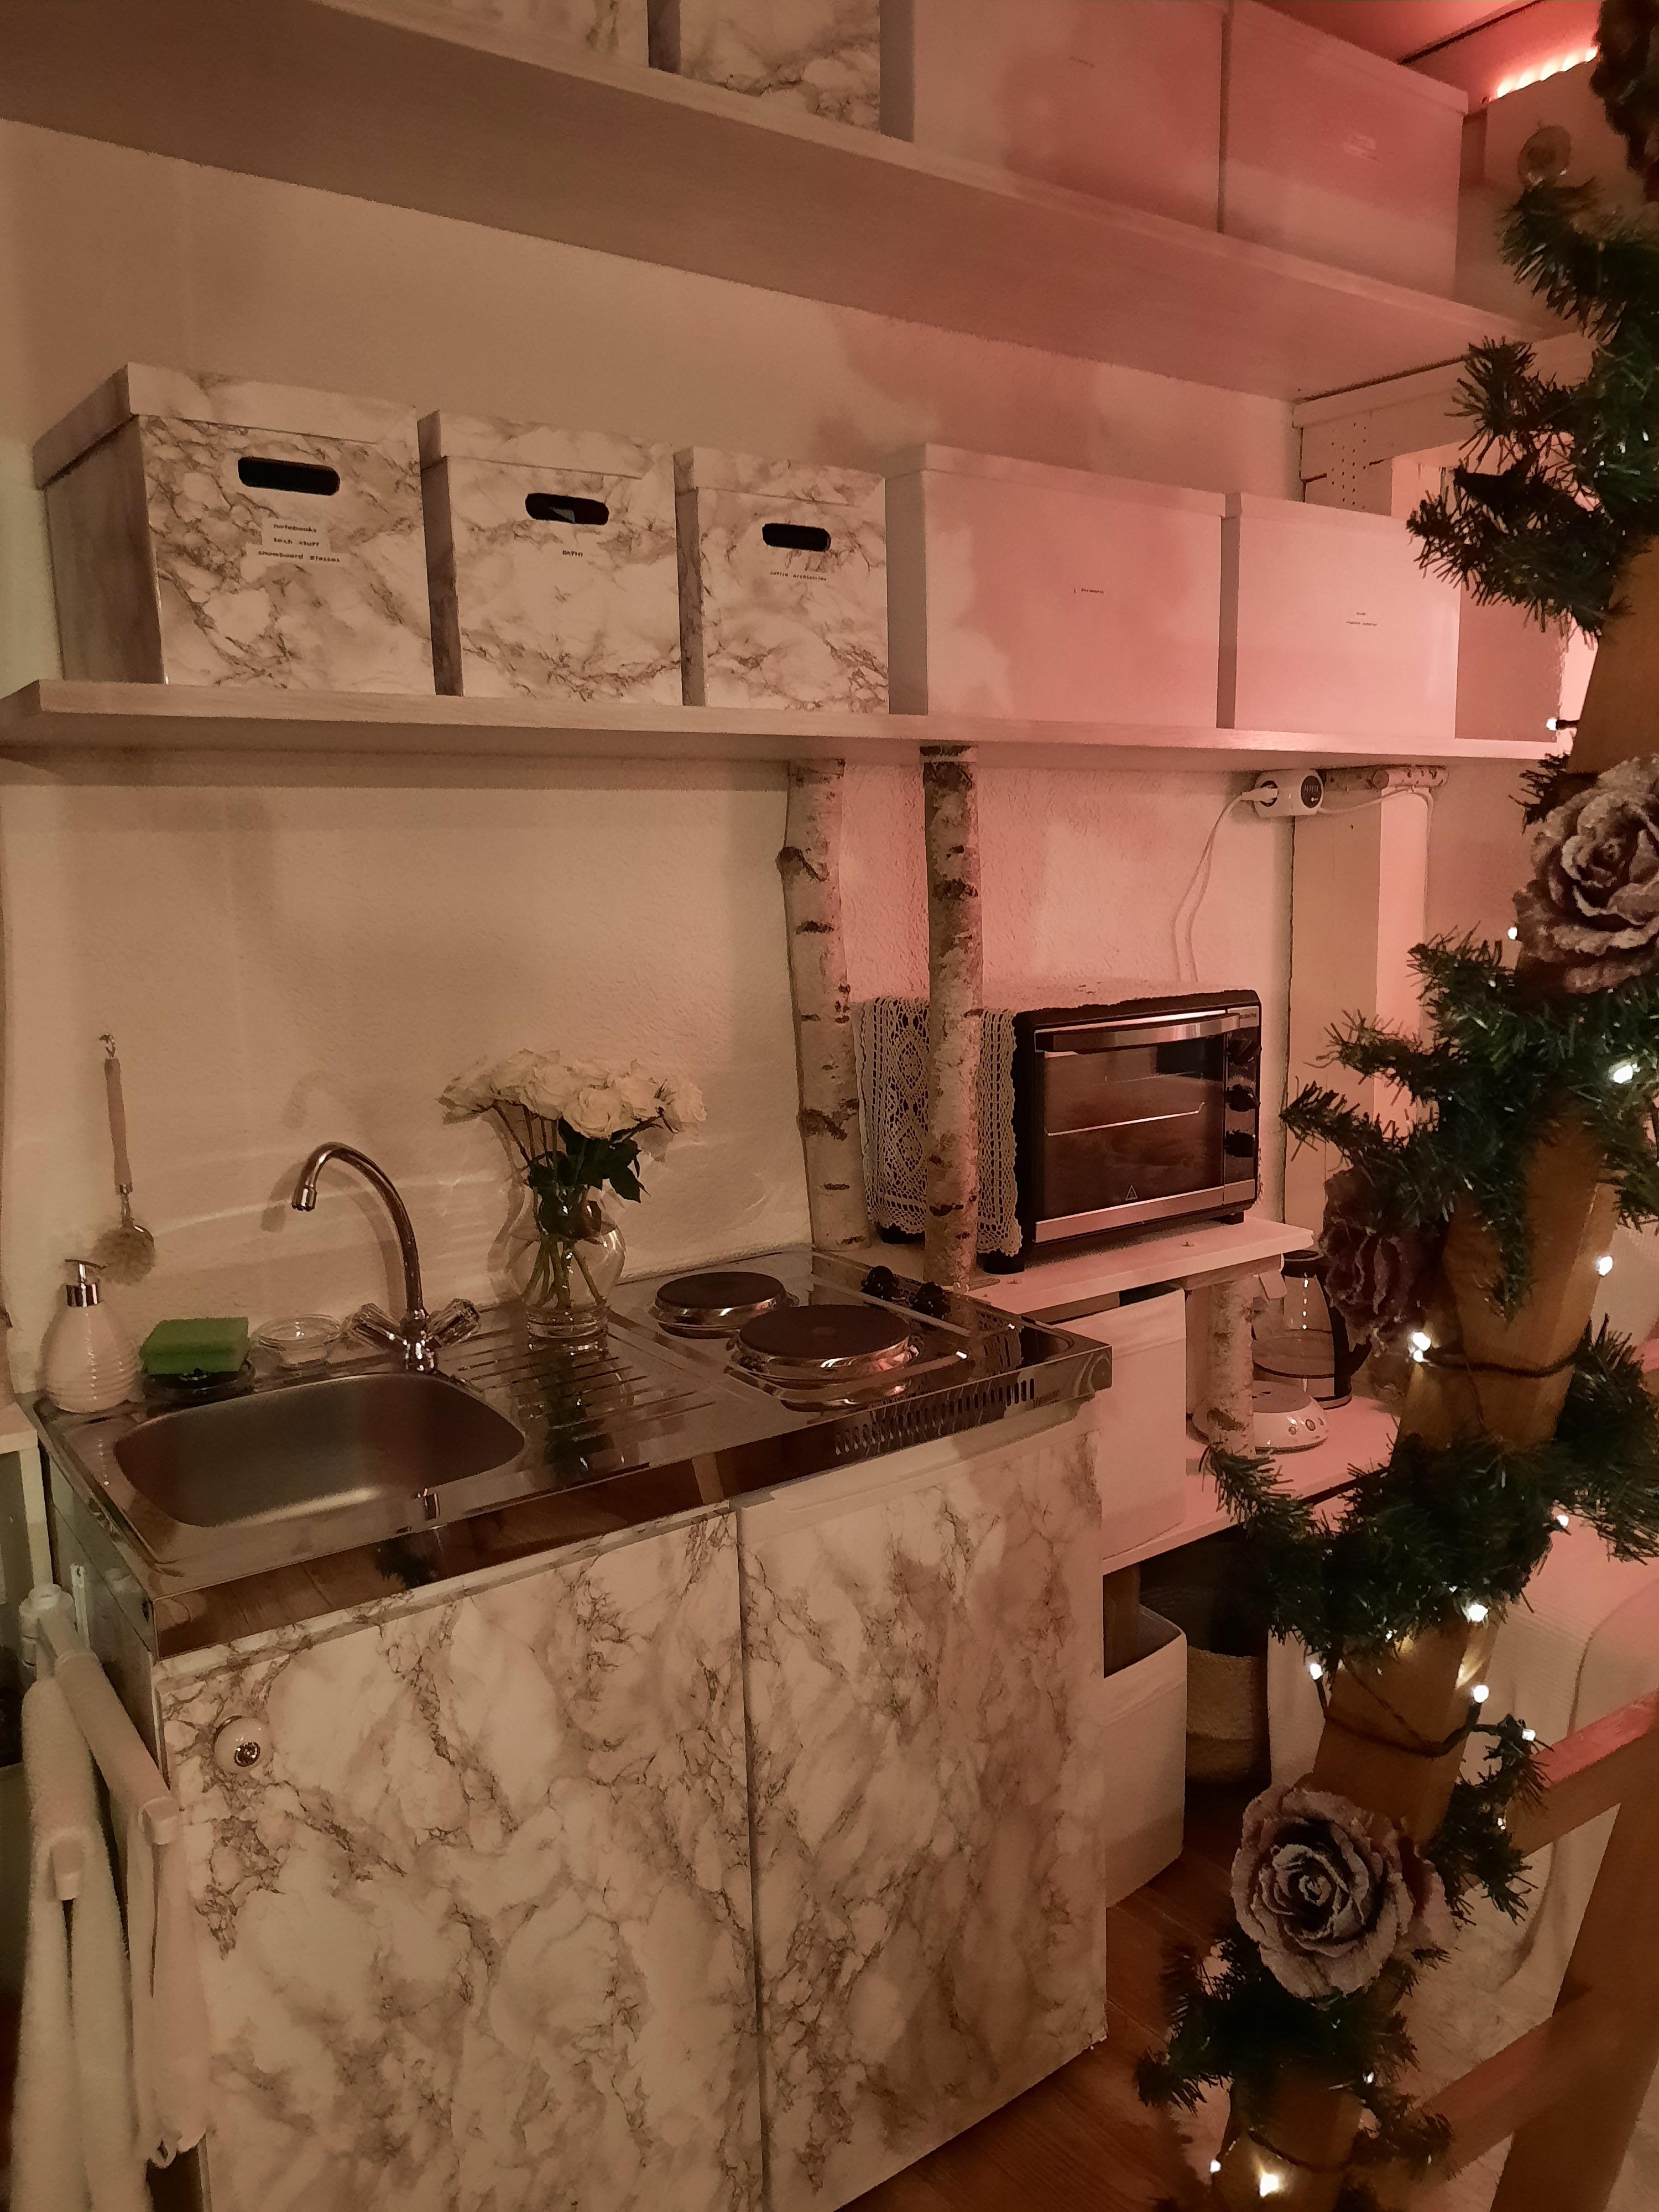 Meine kleine Werkstattwohnung...
#wohnung #werkstatt #weihnachten #weihnachtsdekoration #rosen #weiß #regale #stauraum #küche #mormarstil #kleinaberfein #couchstyle 